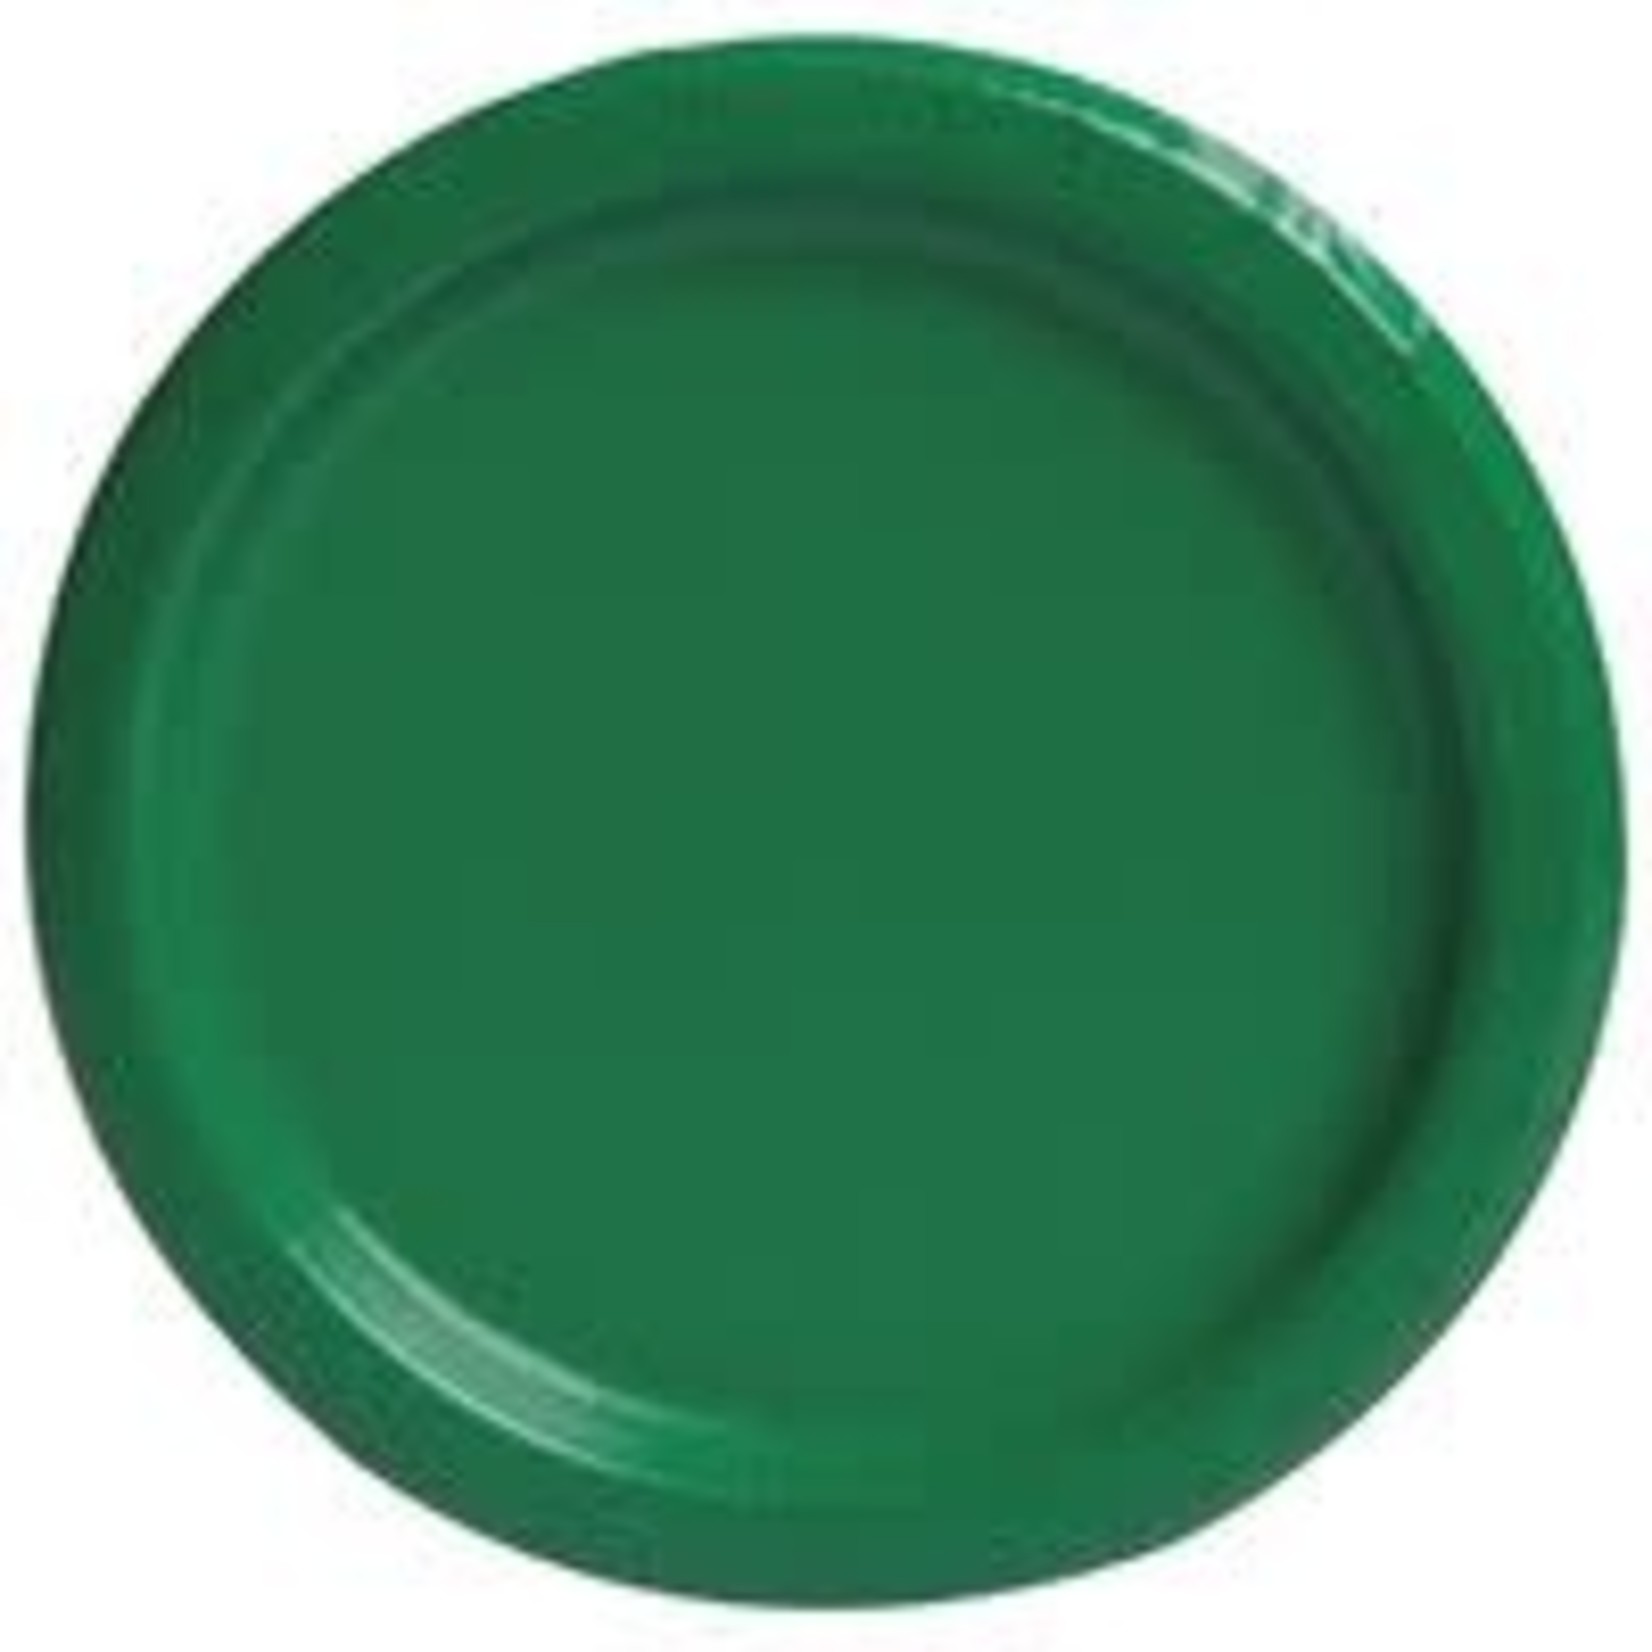 Emerald Green Solid Round 7" Dessert Plates  20ct